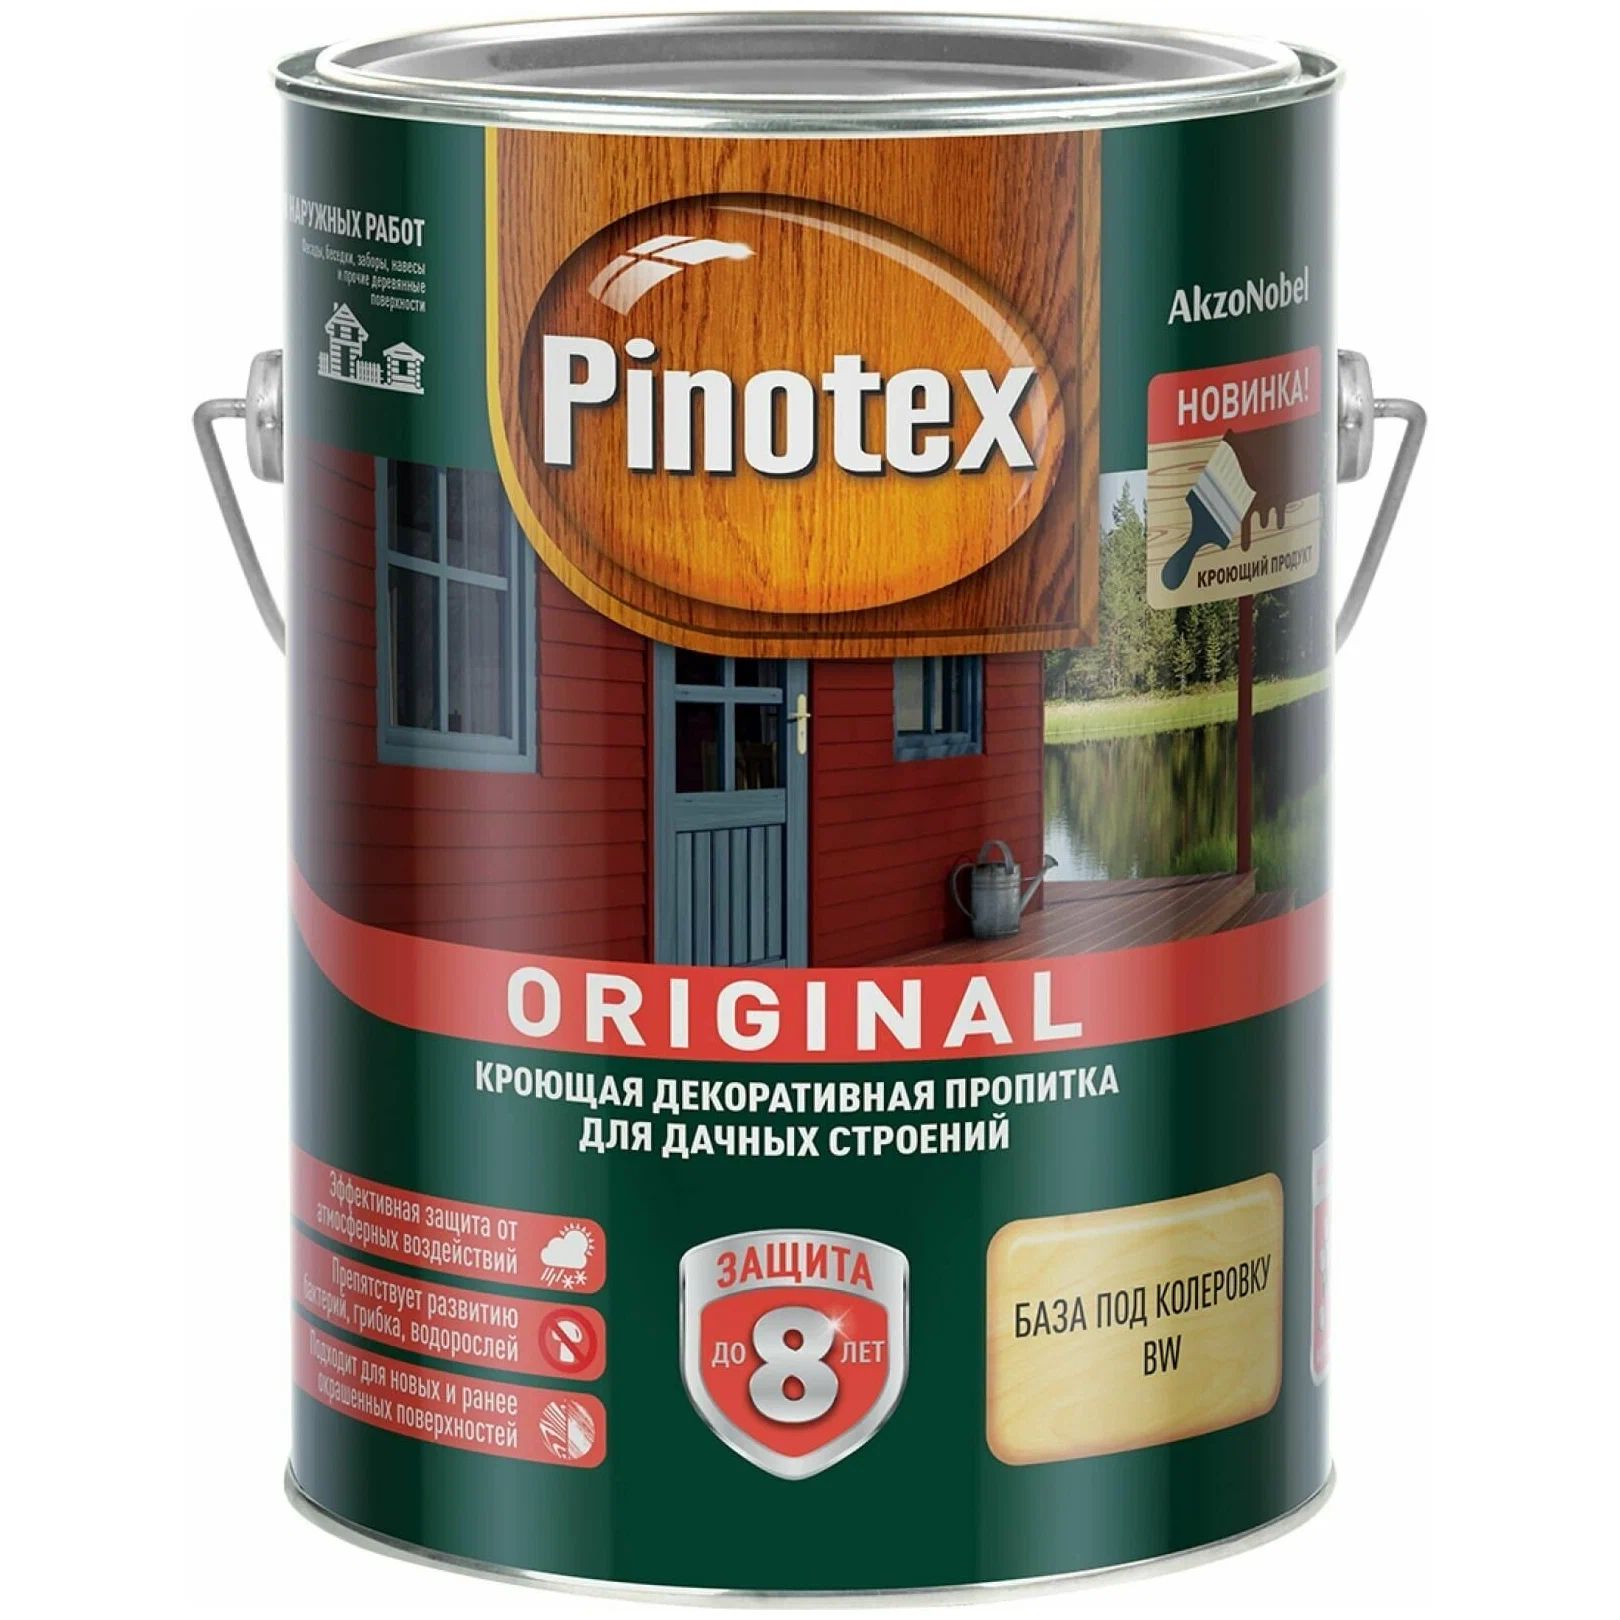 Пропитка Pinotex Original для деревянных поверхностей, предназначенная для подготовки под окраску, объемом 2,7 литра.